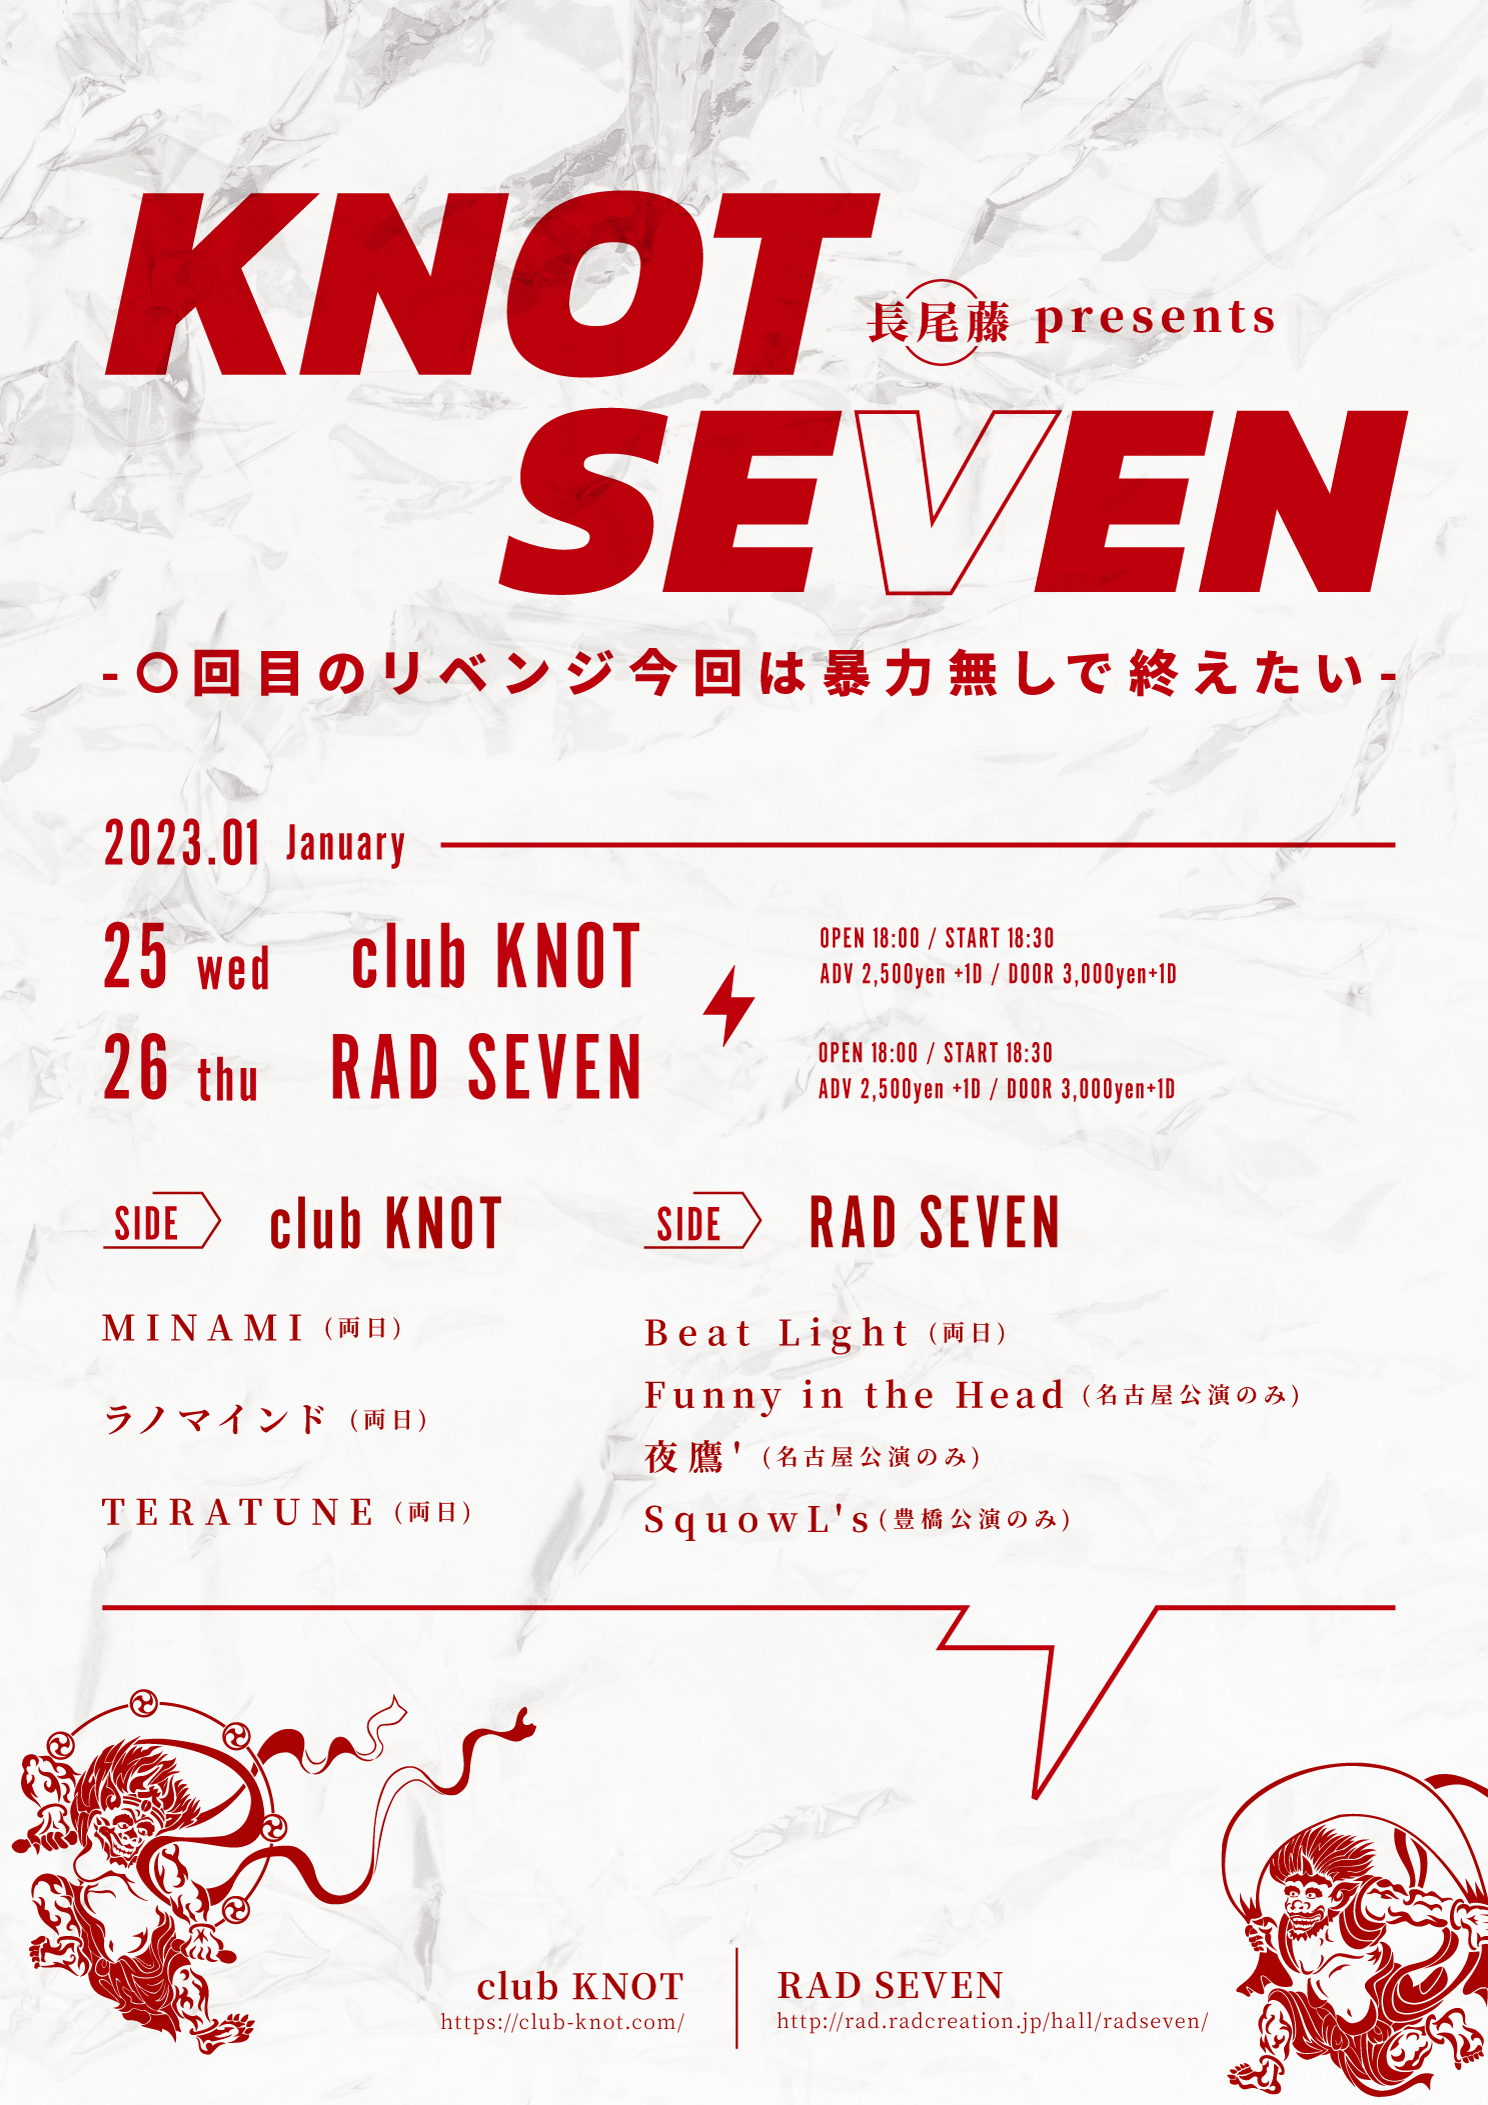 長尾藤 presents KNOT SEVEN -○回目のリベンジ今回は暴力無しで終えたい-